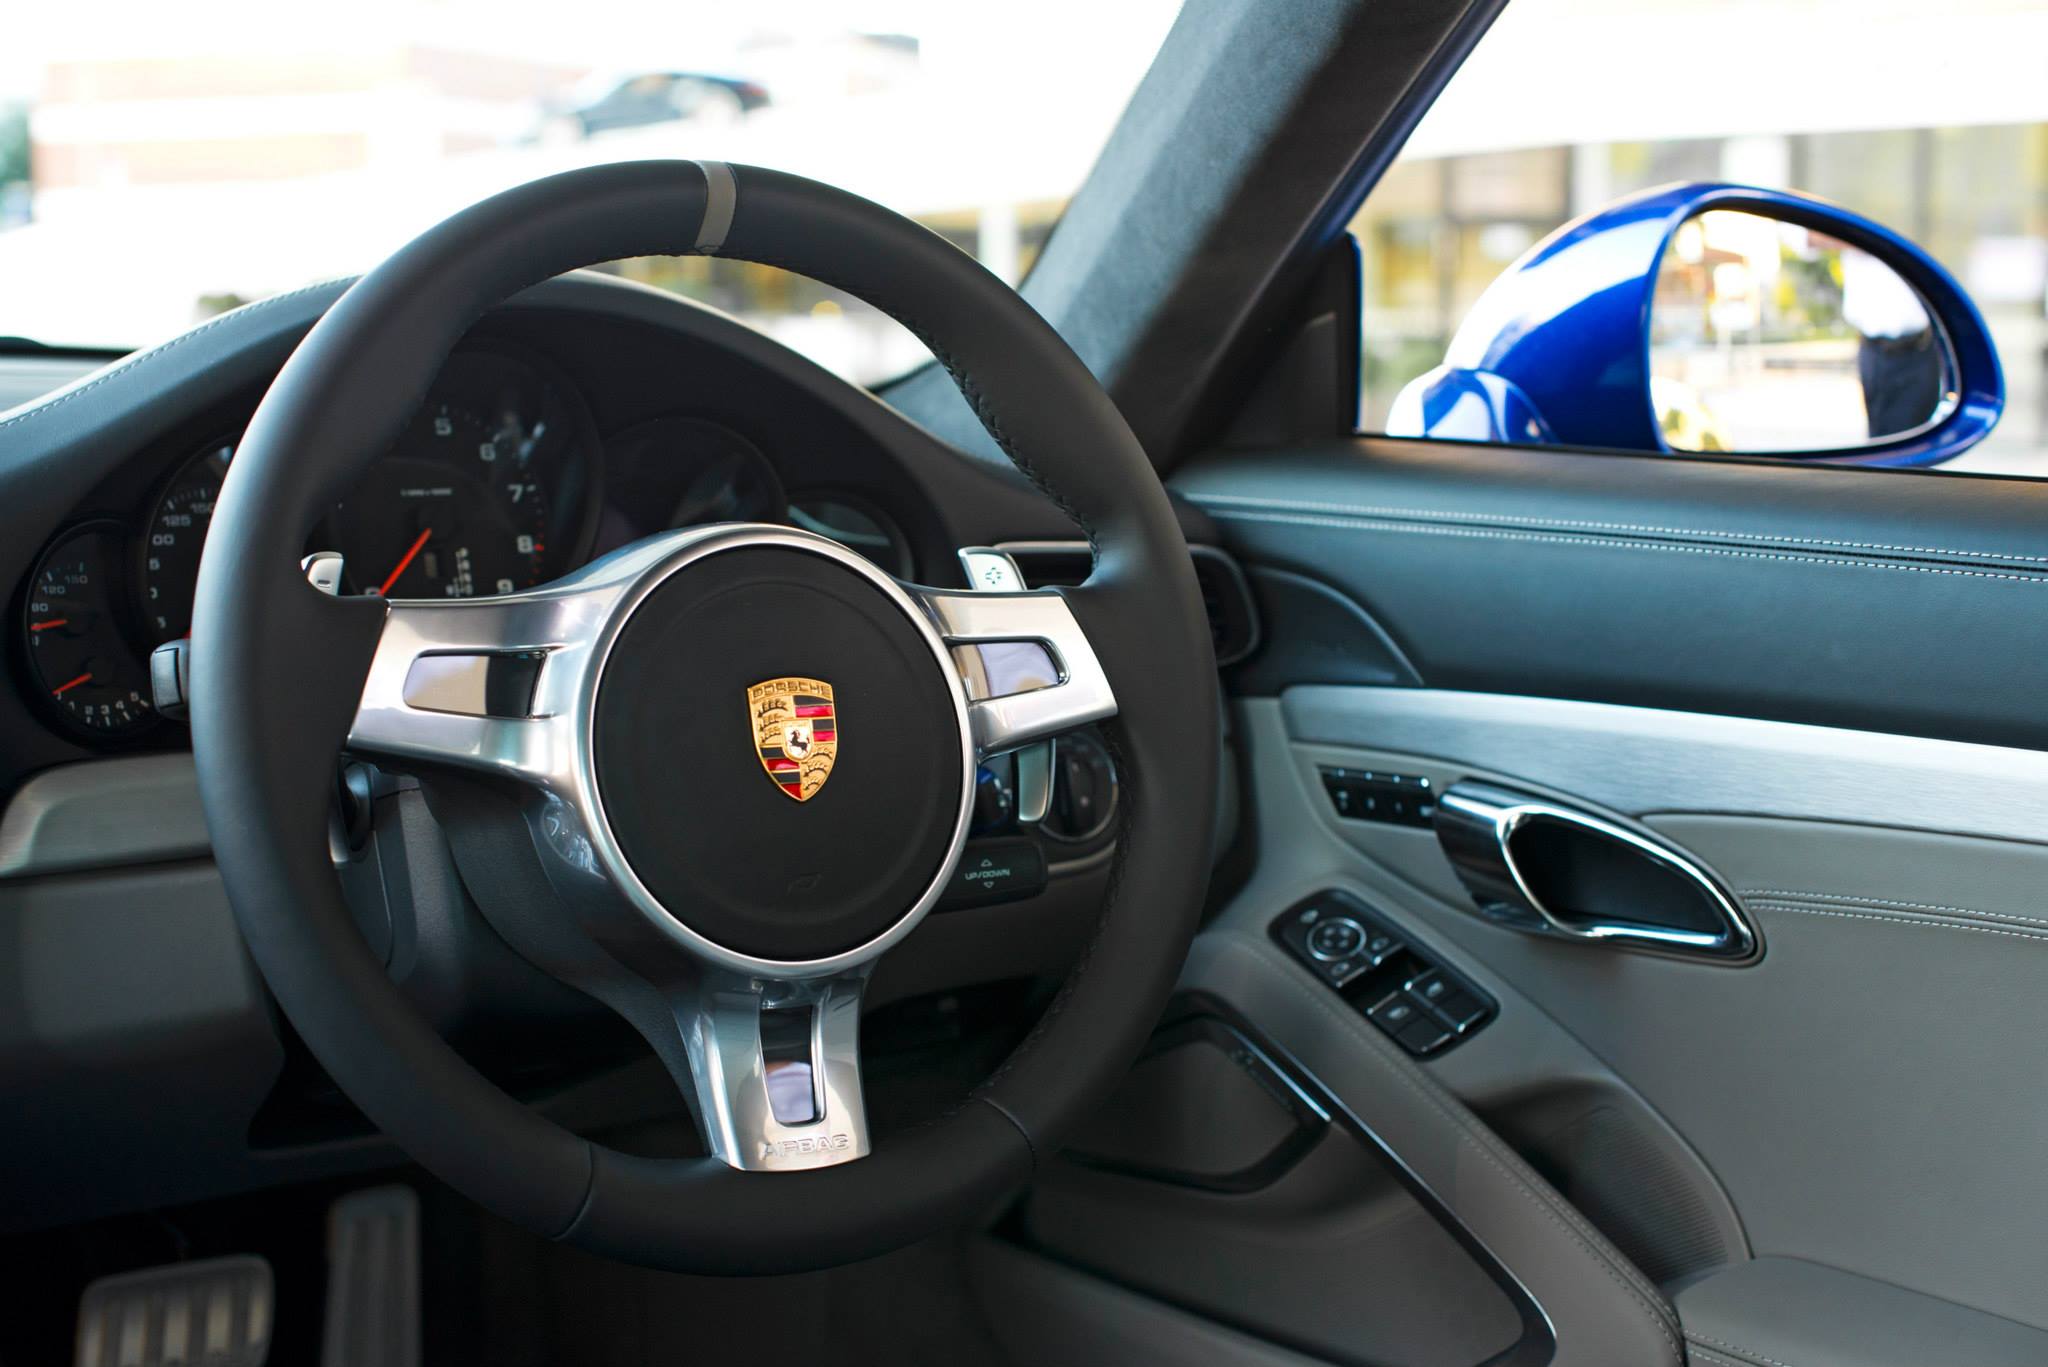 Cinco milhões de fãs da Porsche no Facebook 'ajudam' a customizar